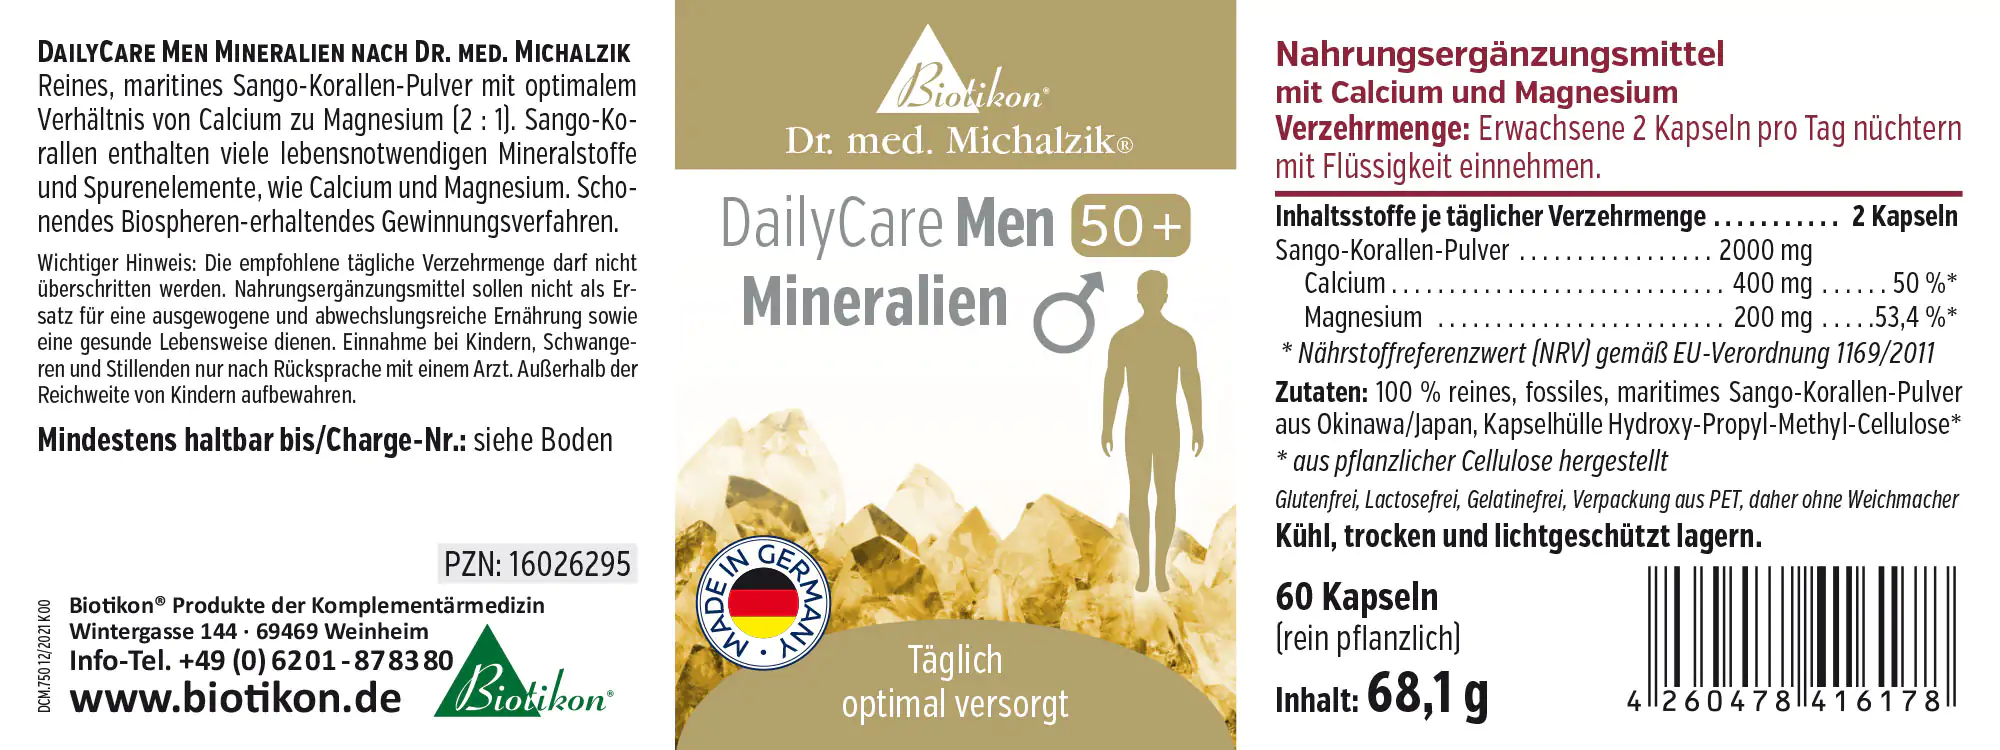 DailyCare Men 50+ Minerali